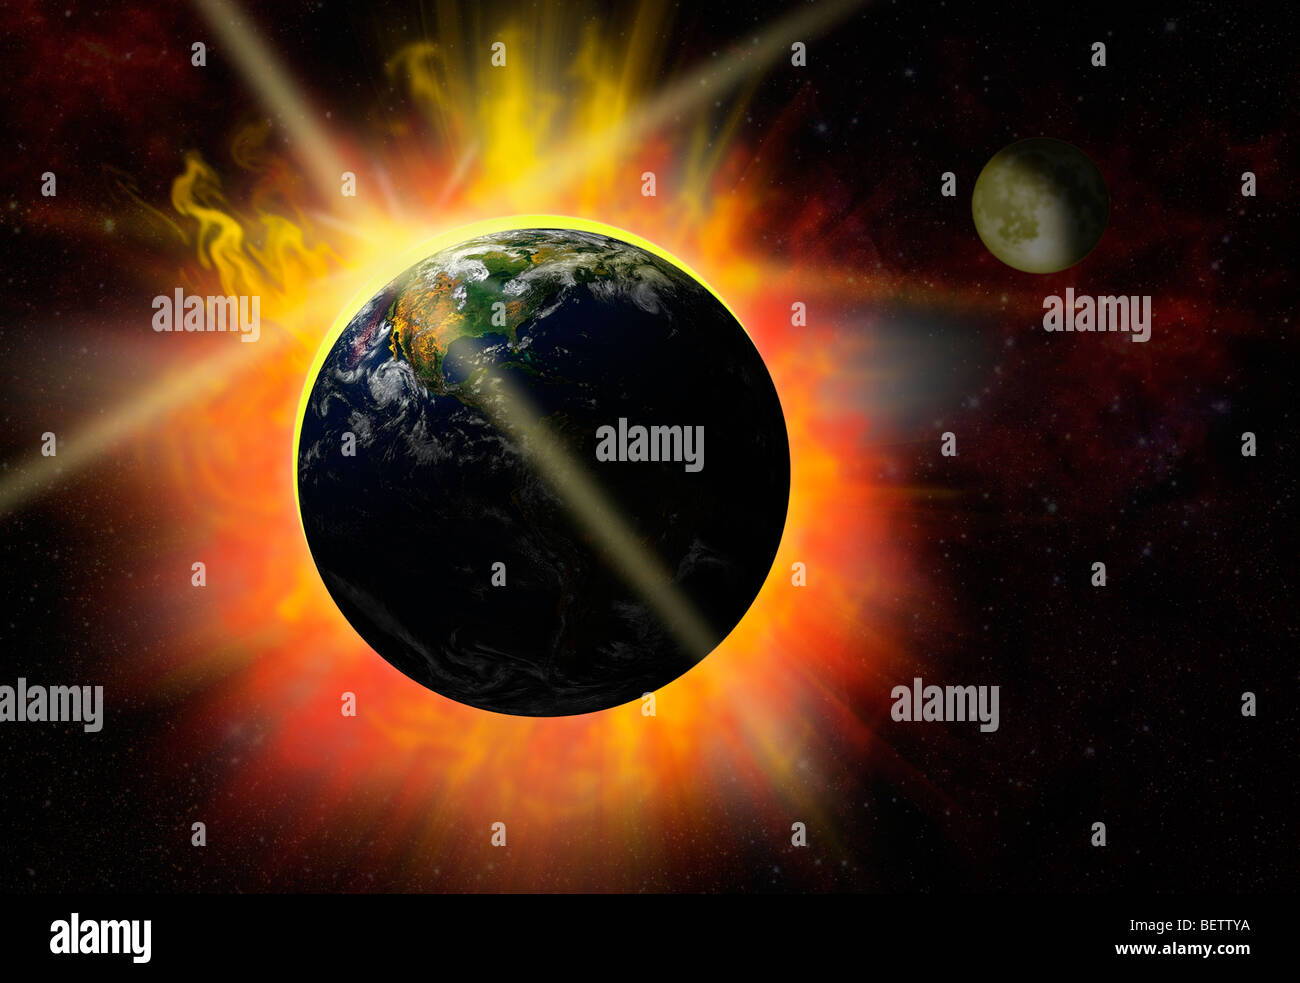 brechen des Tages - eclipse - Ausbruch - Sonneneruption Stockfoto